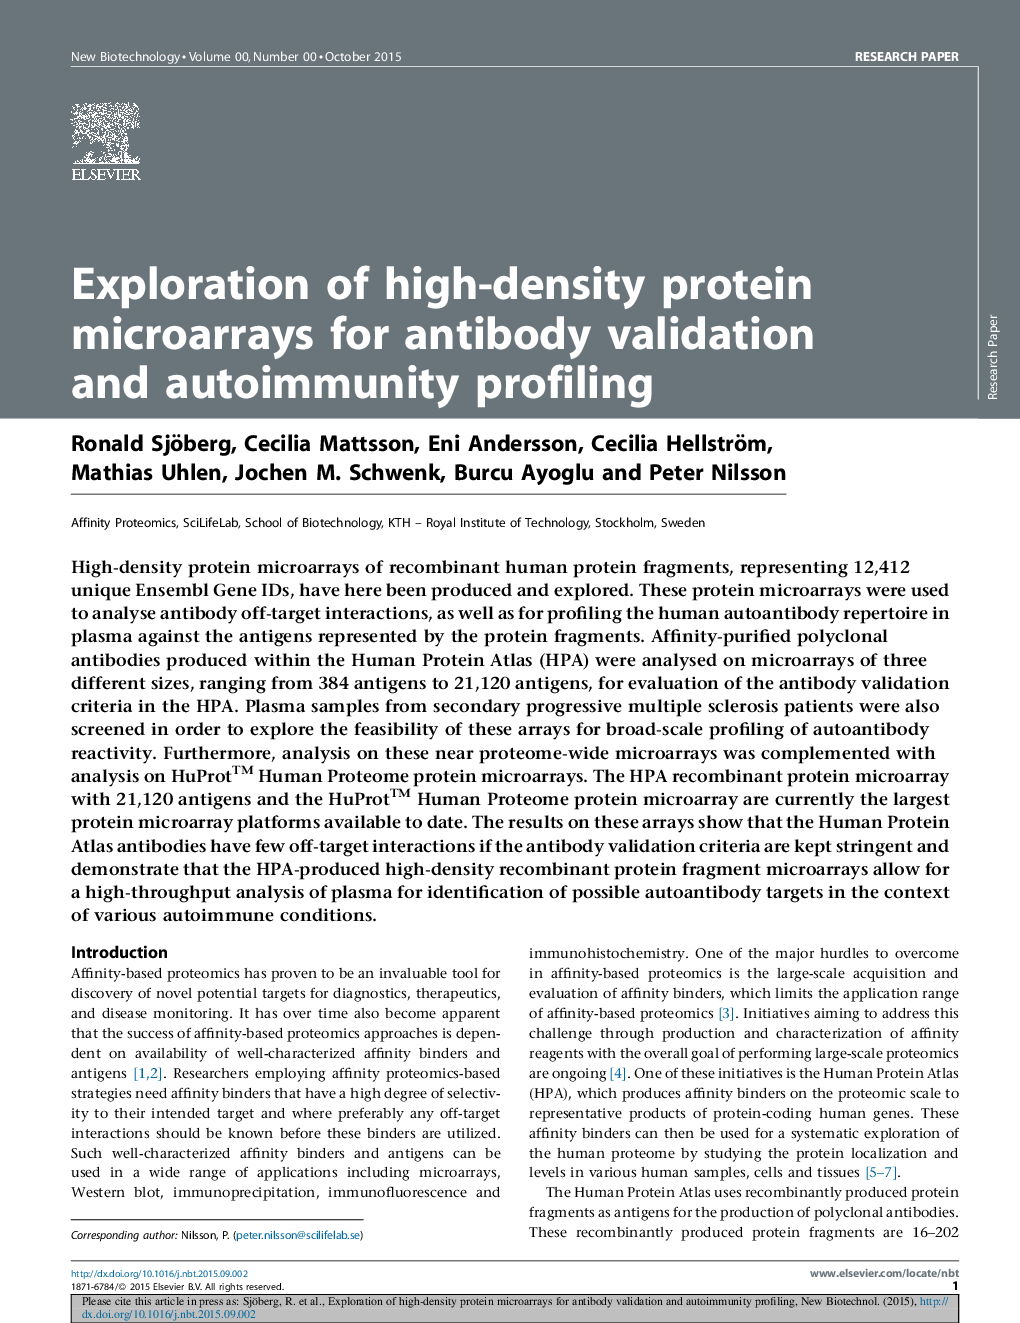 اکتشاف میکروراهای پروتئینی با چگالی بالا برای اعتبارسنجی آنتی بادی و شناسایی خودکارآمدی 